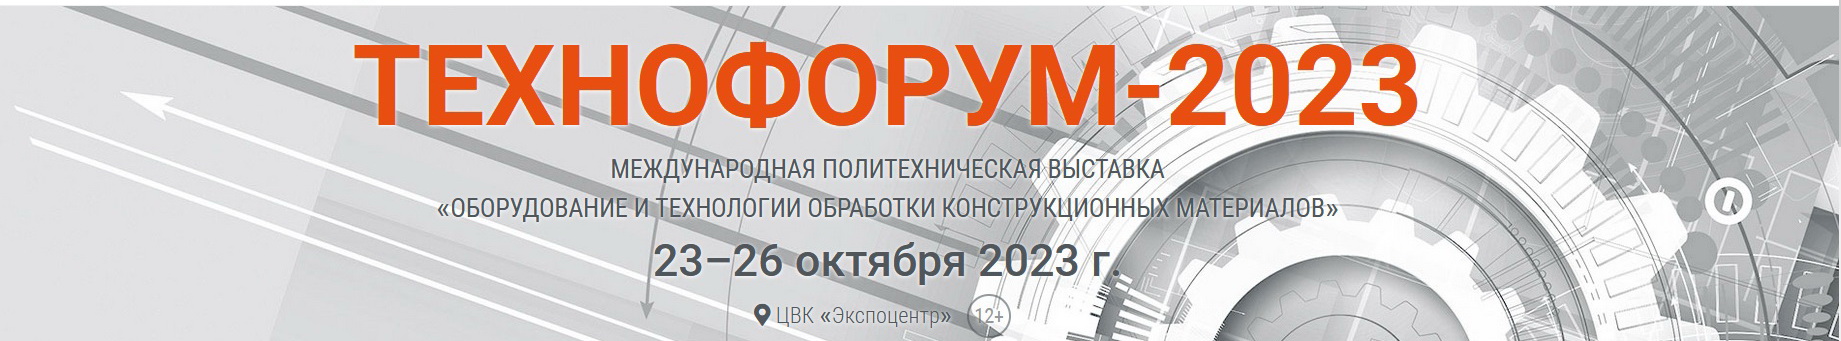 Приглашаем на выставку "ТЕХНОФОРУМ-2023" г.Москва с 23 по 26 октября 2023г.